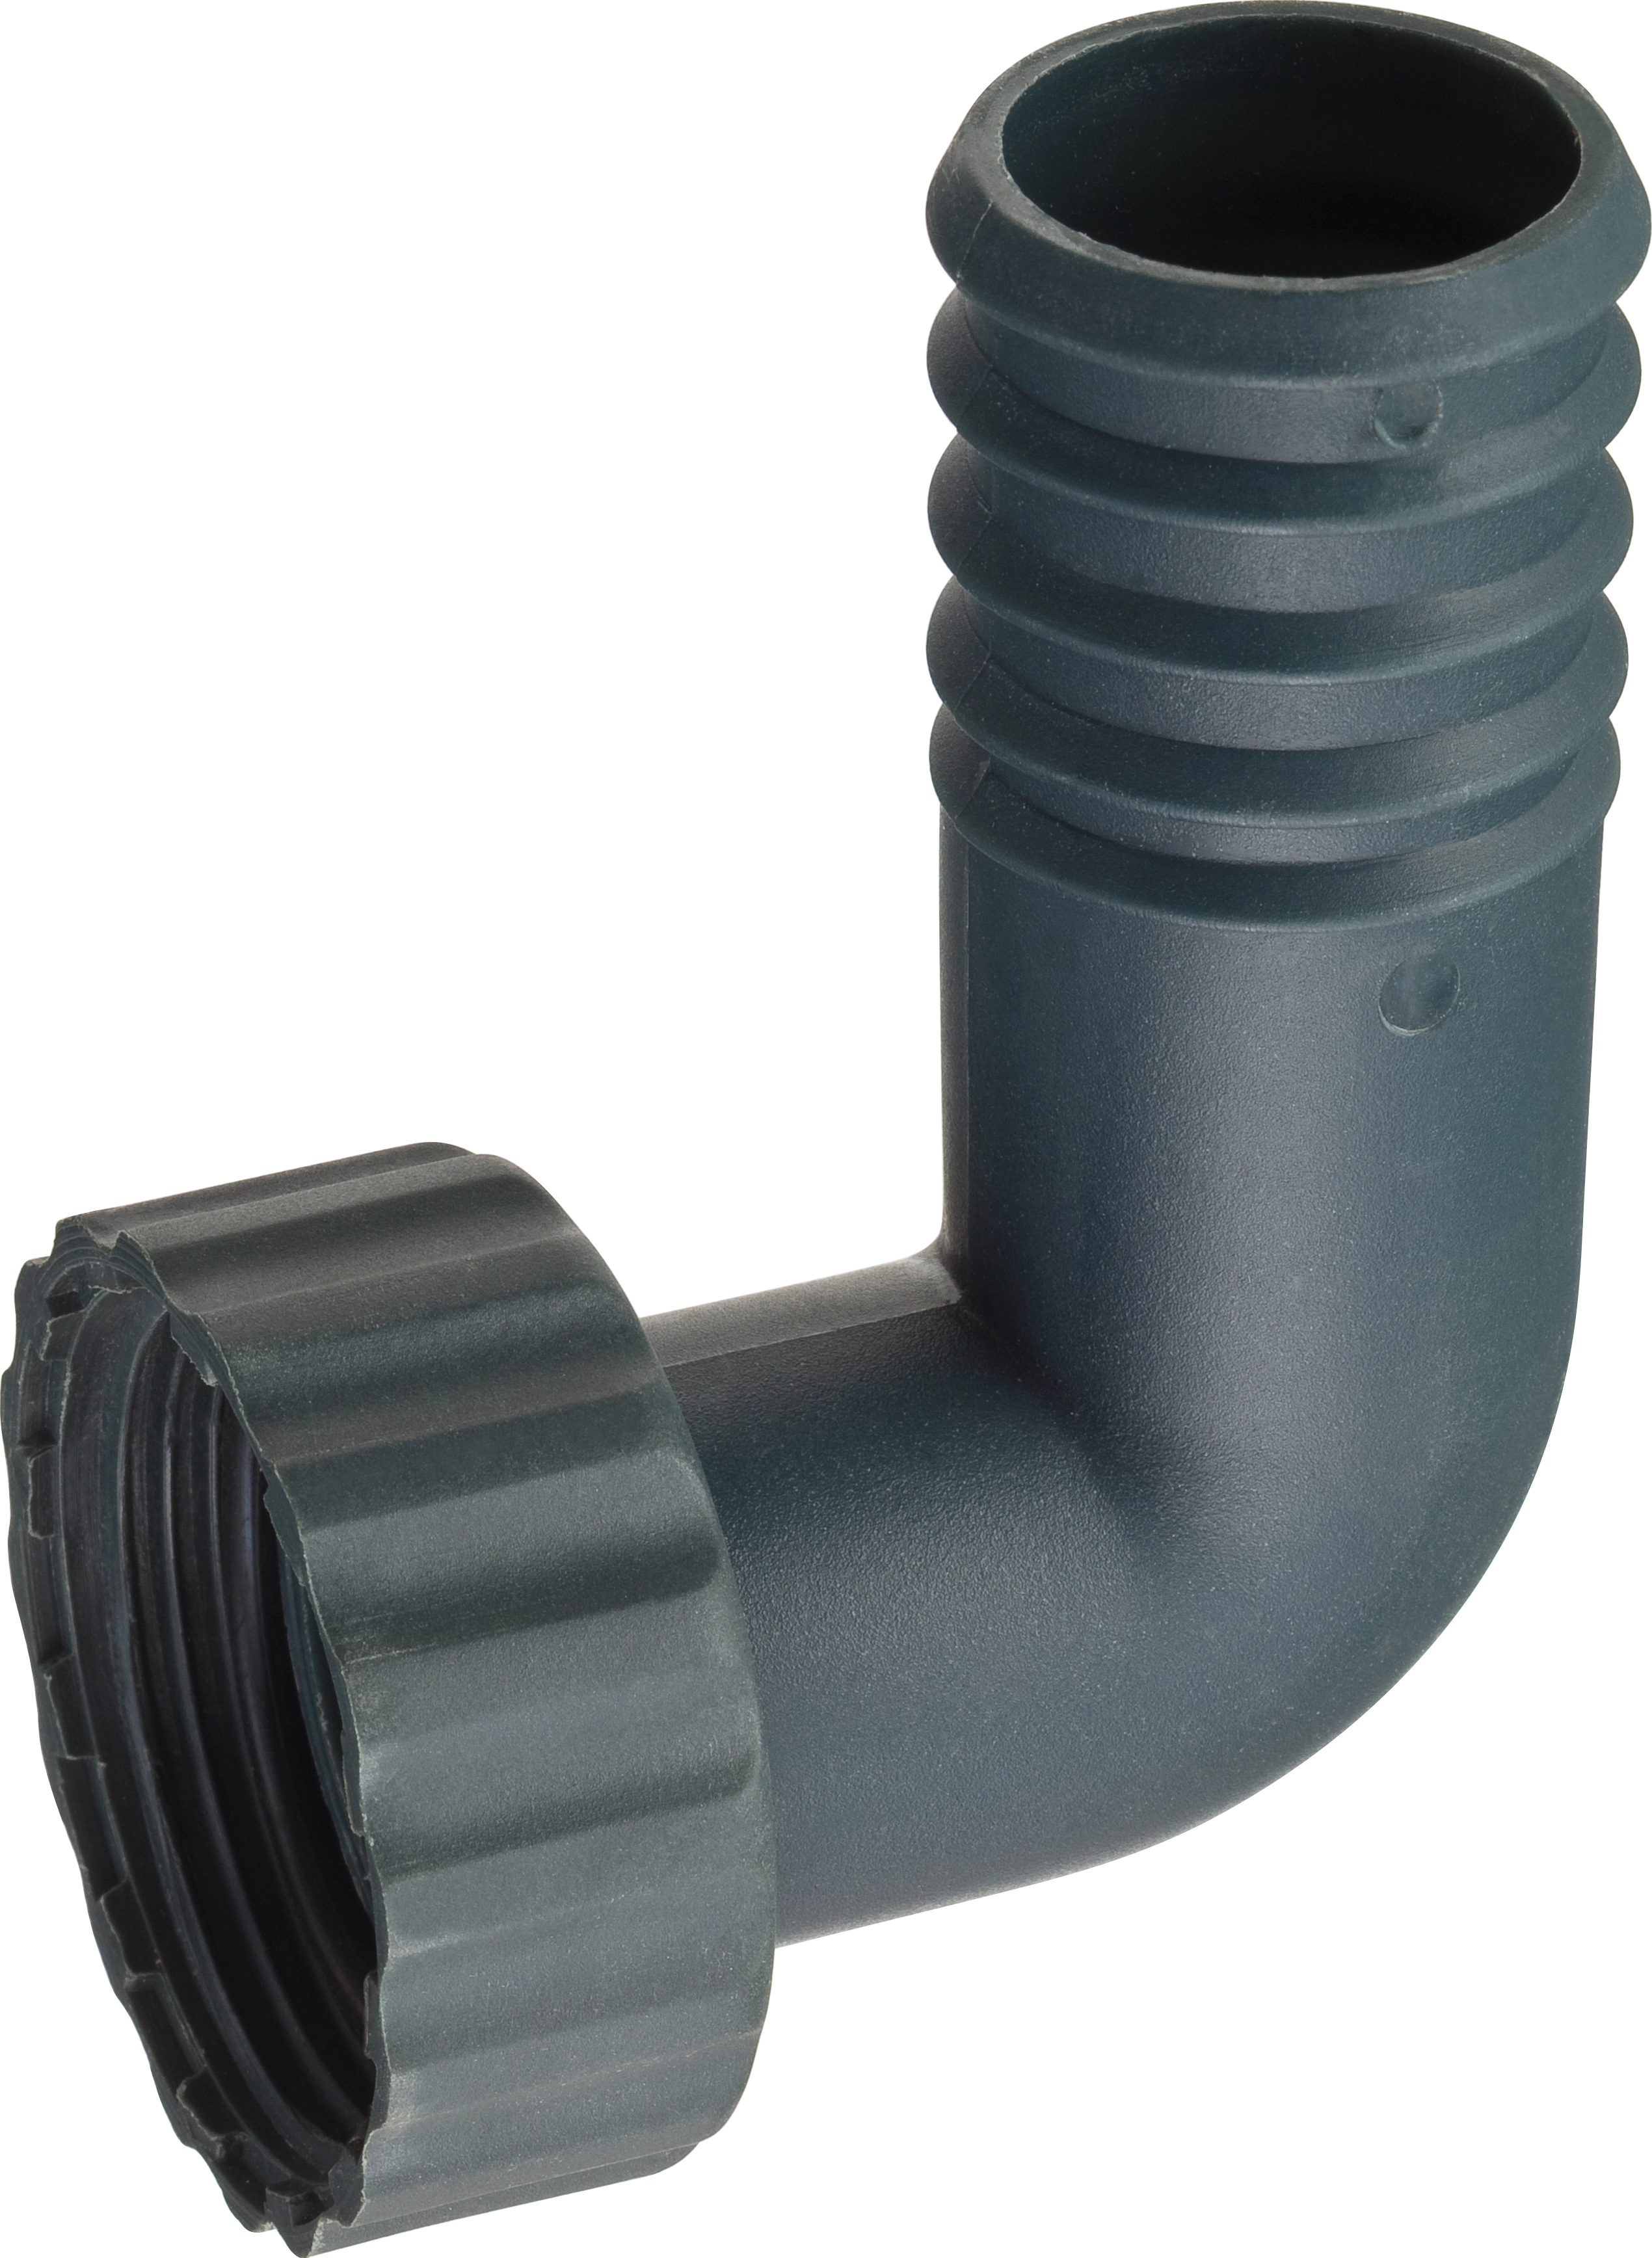 Schlauchanschluss für Tauchpumpen 32 mm (1 1/4) kaufen bei OBI